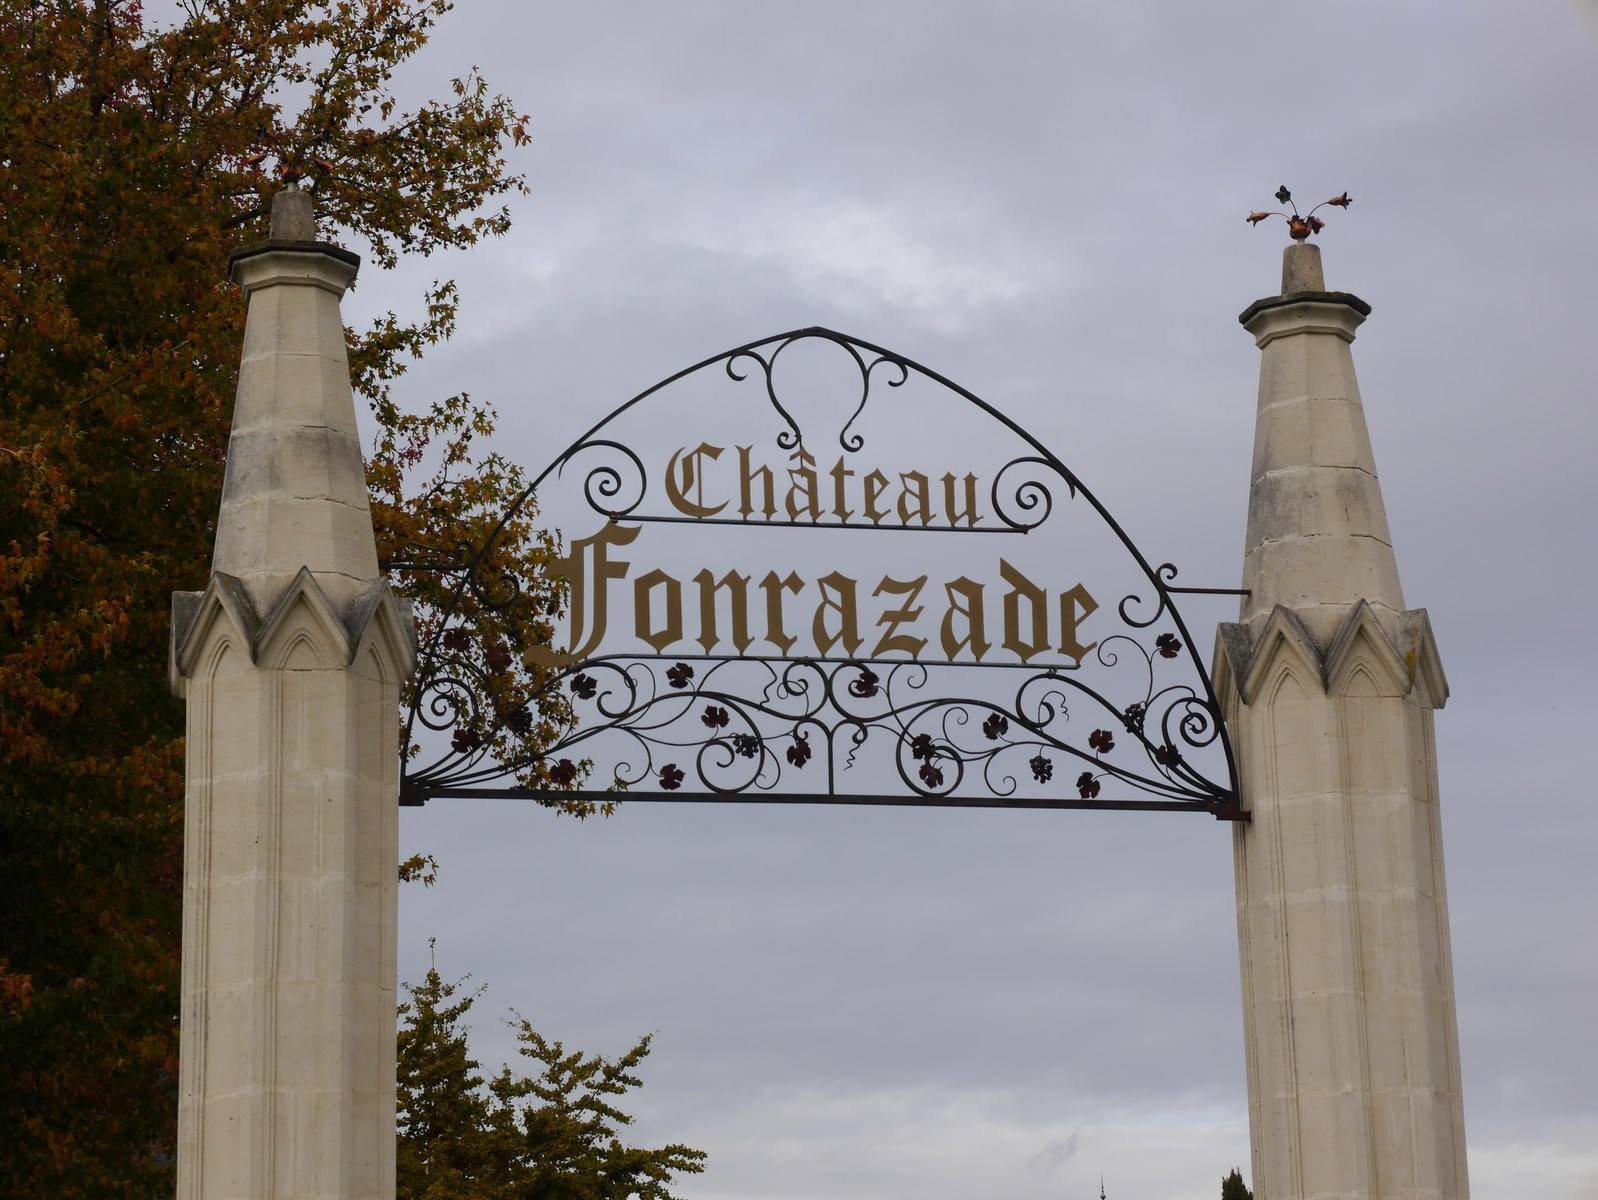 Château Fonrazade